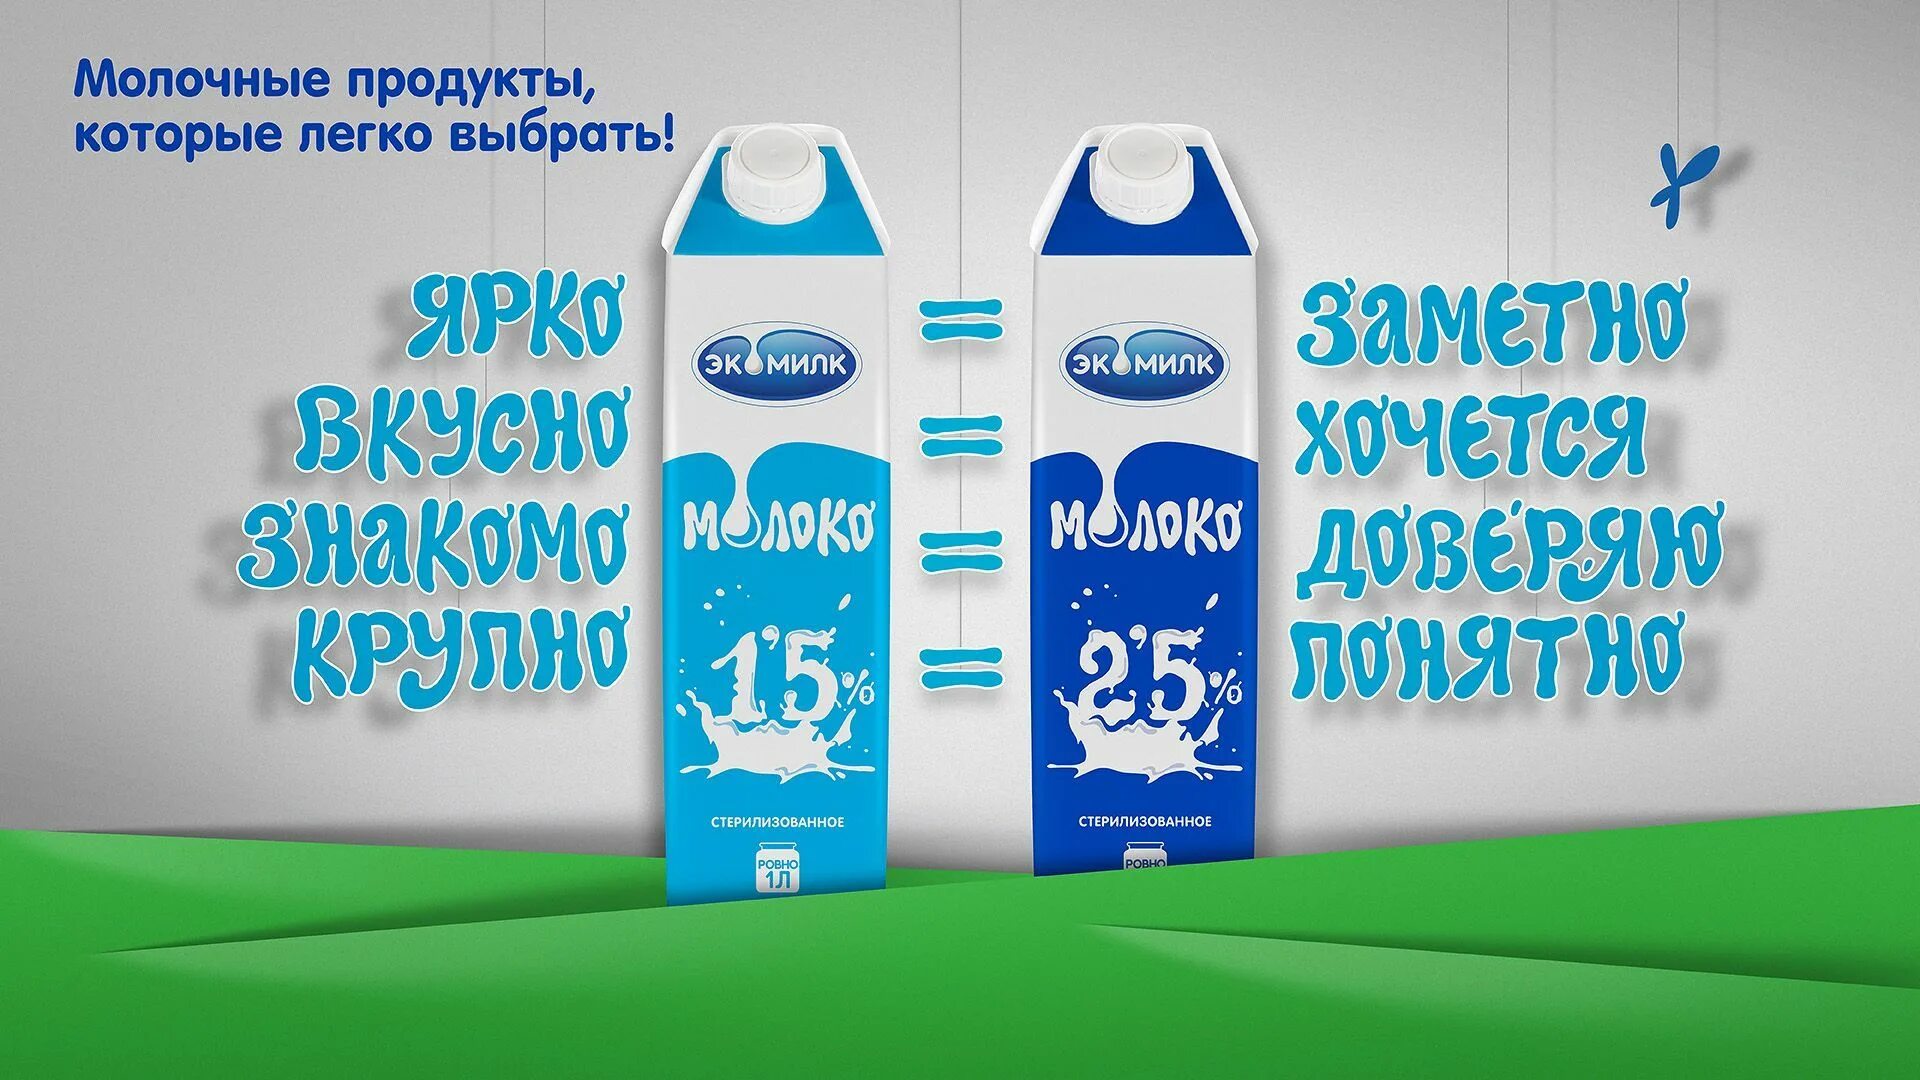 Сайт производителей рекламы. Реклама молока. Молоко реклама. Реклама молочных продуктов. Баннер молочной продукции.